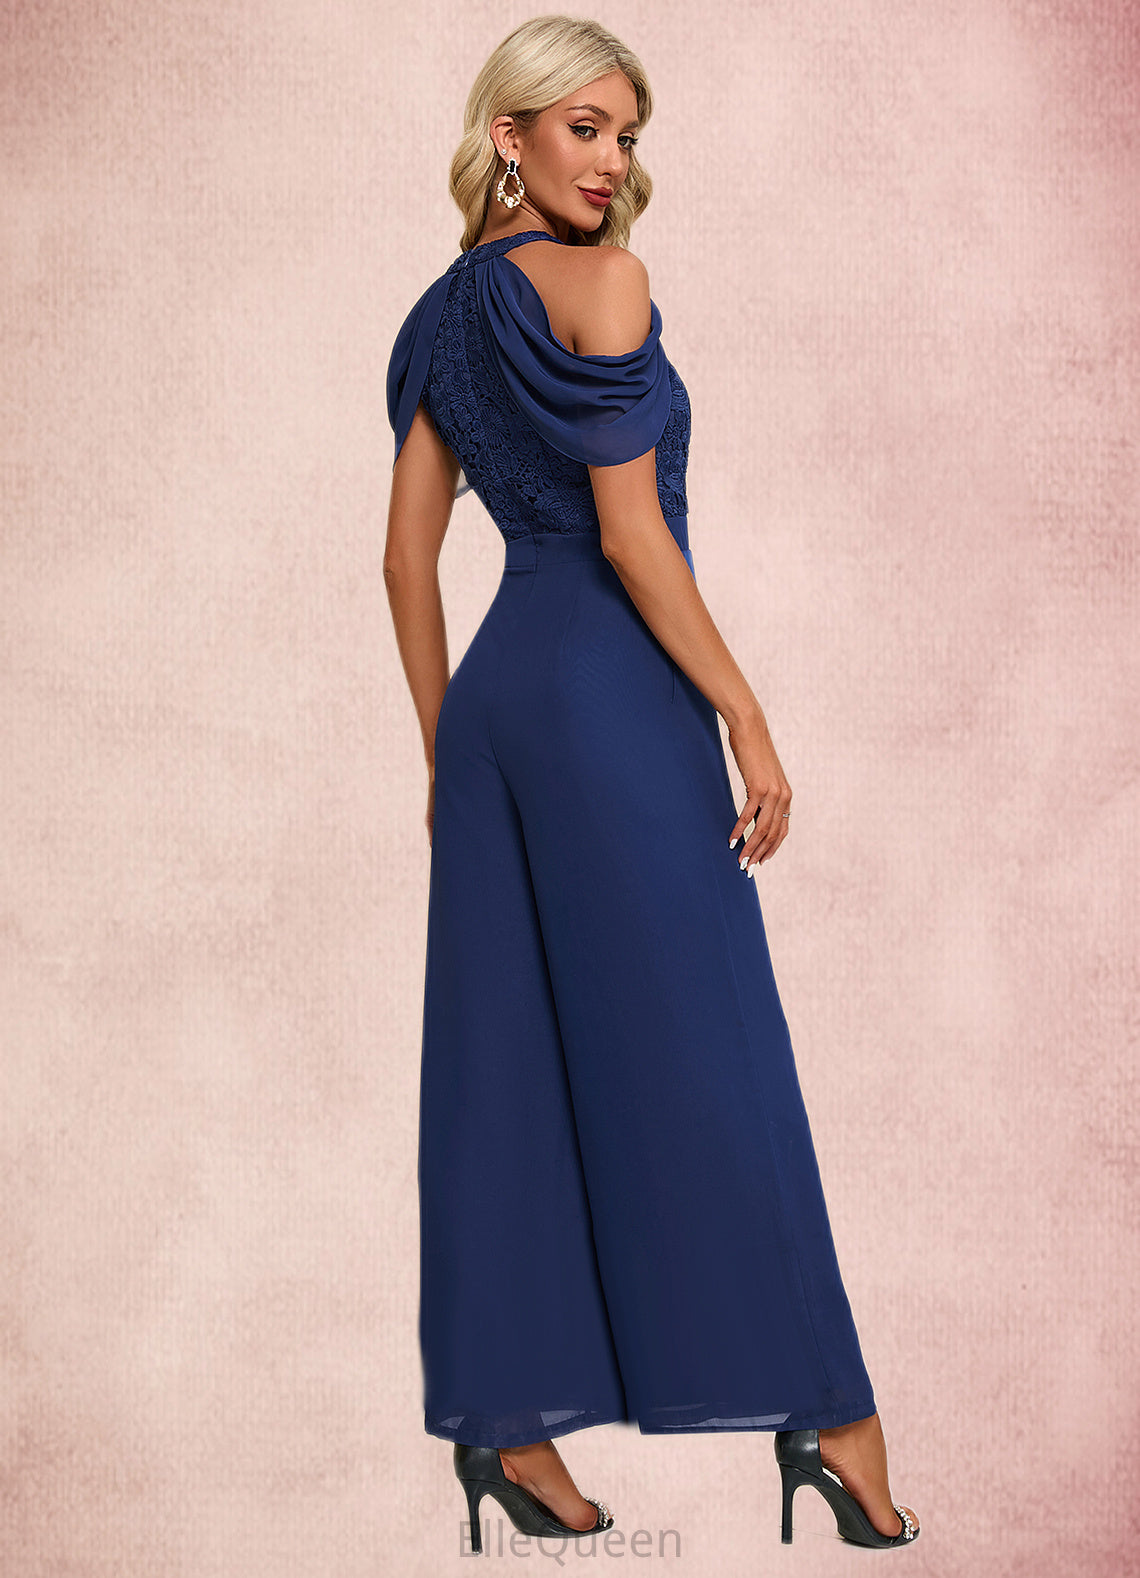 Yoselin Flower Jacquard Off the Shoulder Elegant Jumpsuit/Pantsuit Chiffon Lace Maxi Dresses DGP0022372